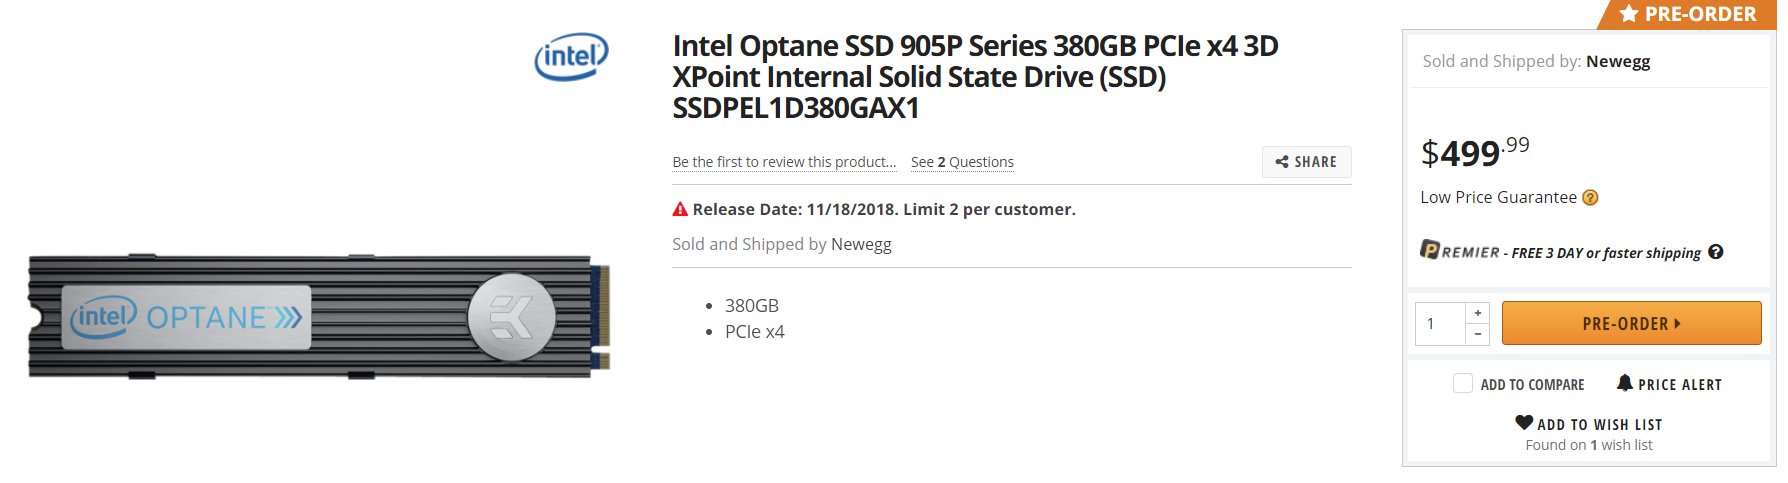 Intel Optane SSD 905P M.2 zur Vorbestellung